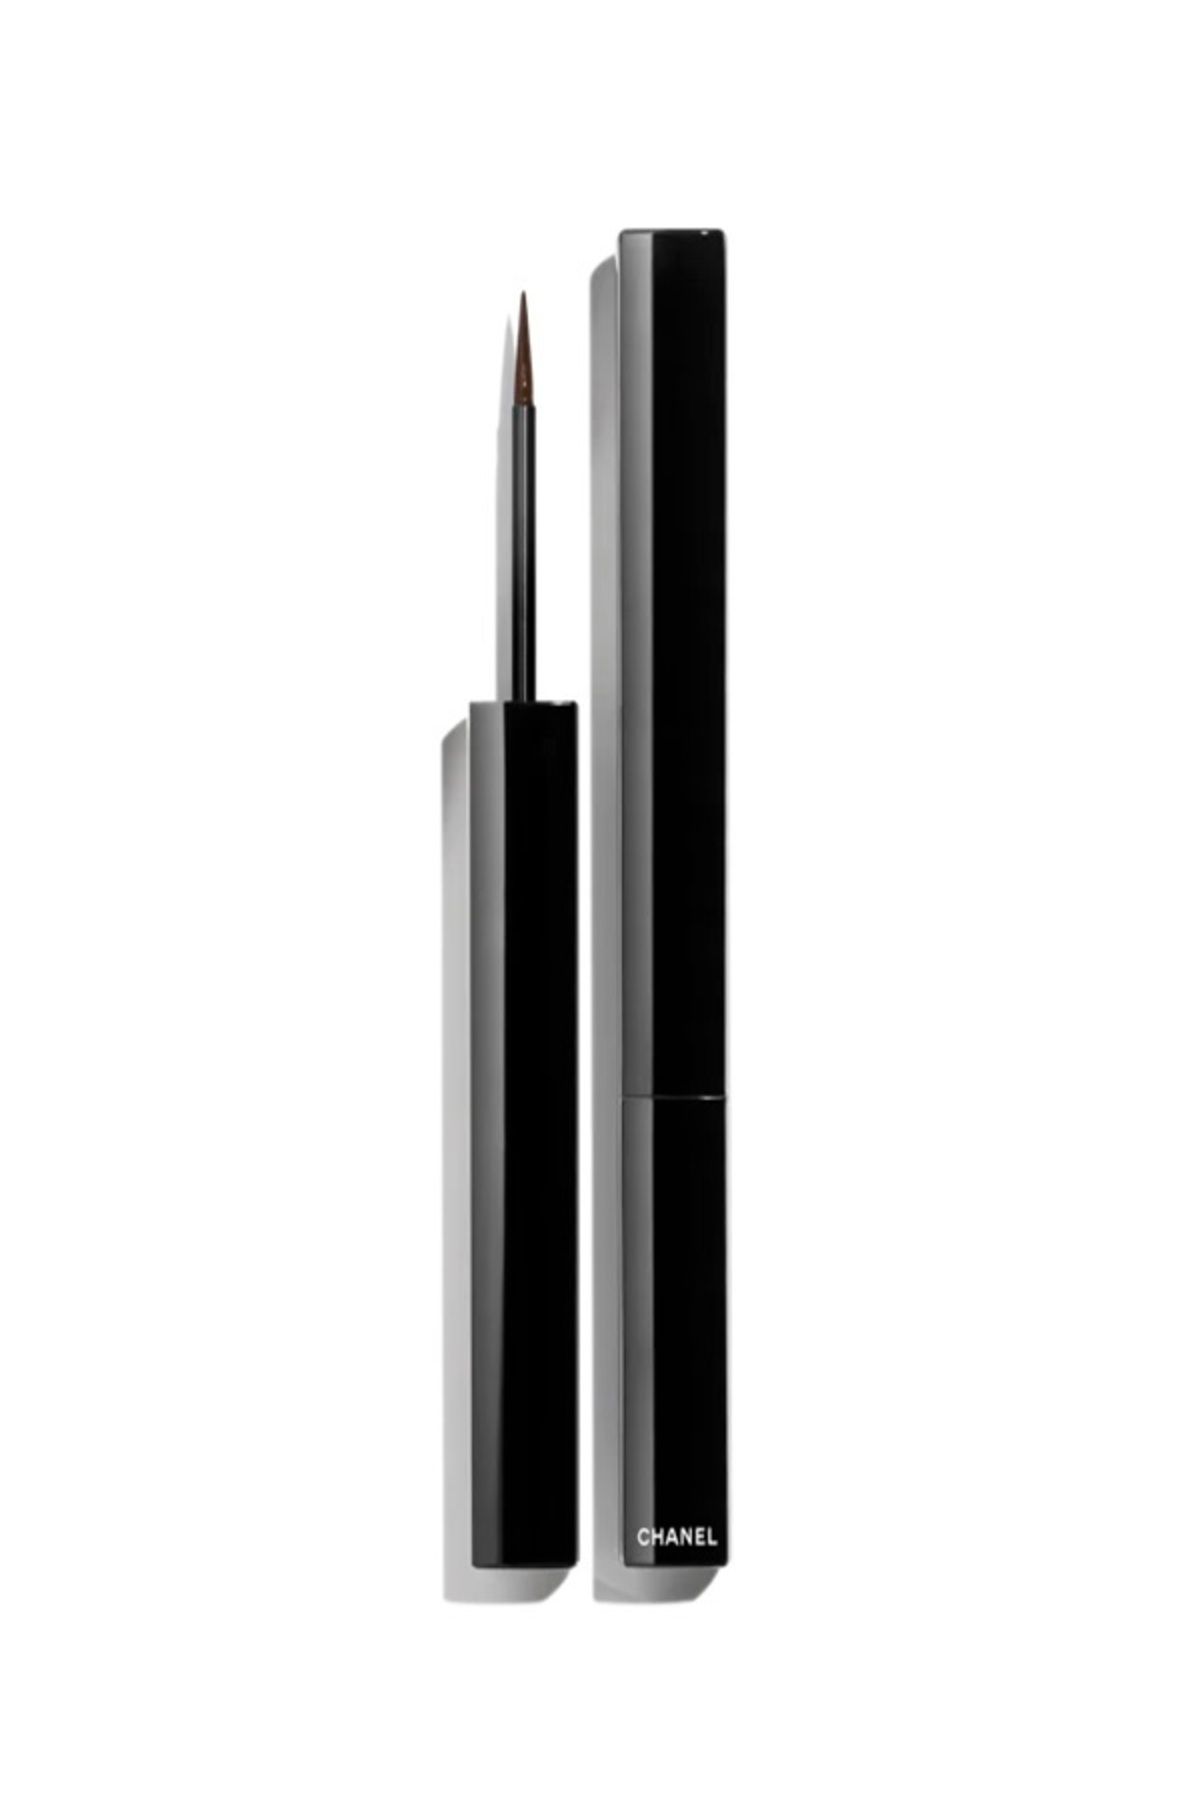 Chanel LE LINER DE CHANEL-Uzun Süre Kalıcı Suya Topaklanmaya Karşı Dayanıklı Likit Eyeliner